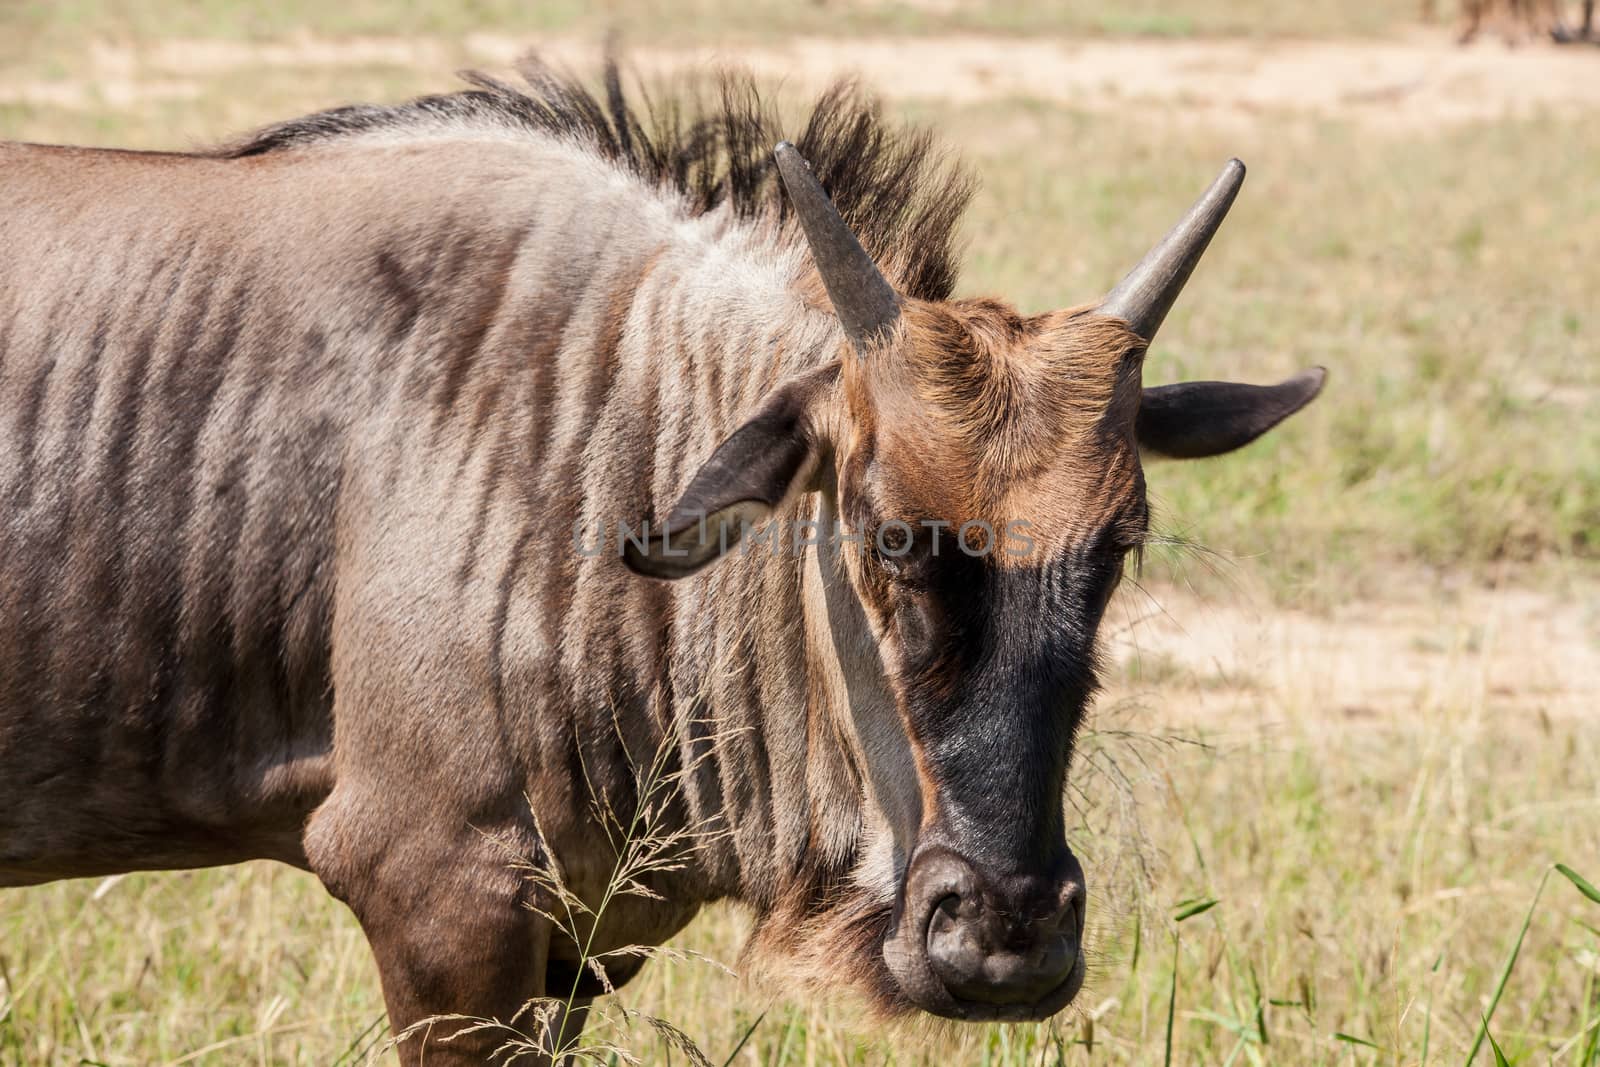 Wildebeest (Connochaetes taurinus) 2 by kobus_peche